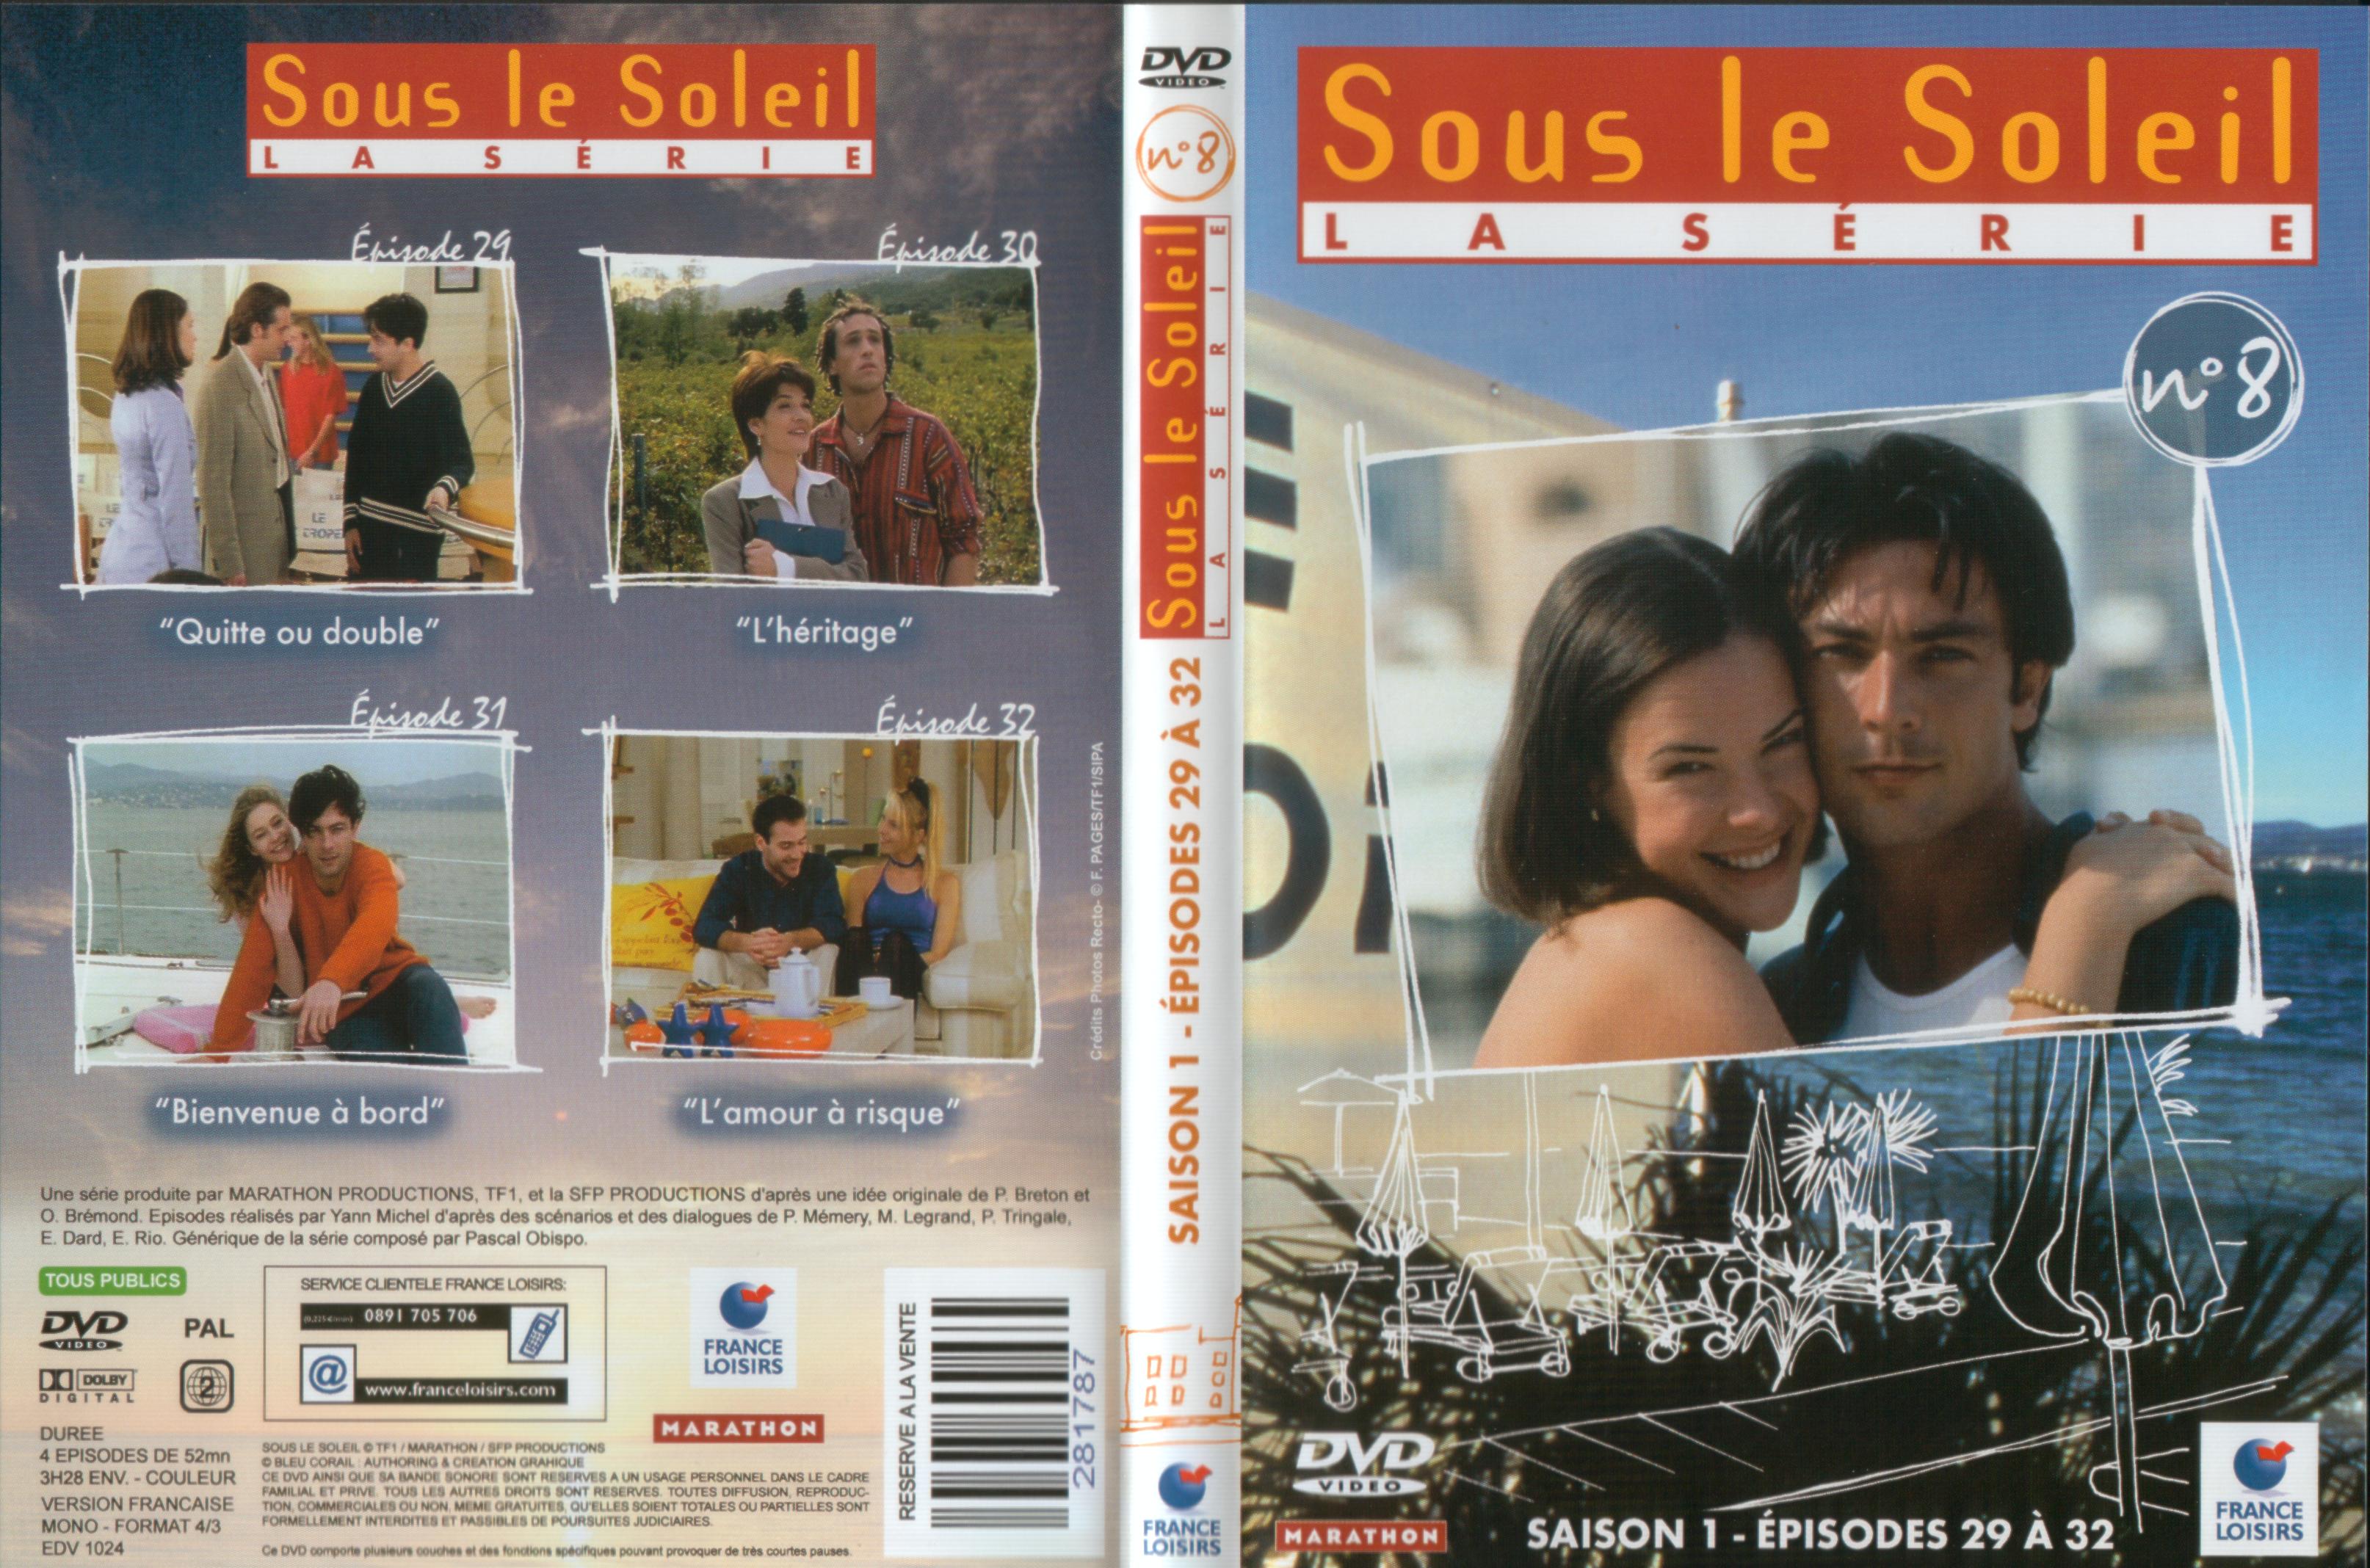 Jaquette DVD Sous le soleil saison 1 vol 8